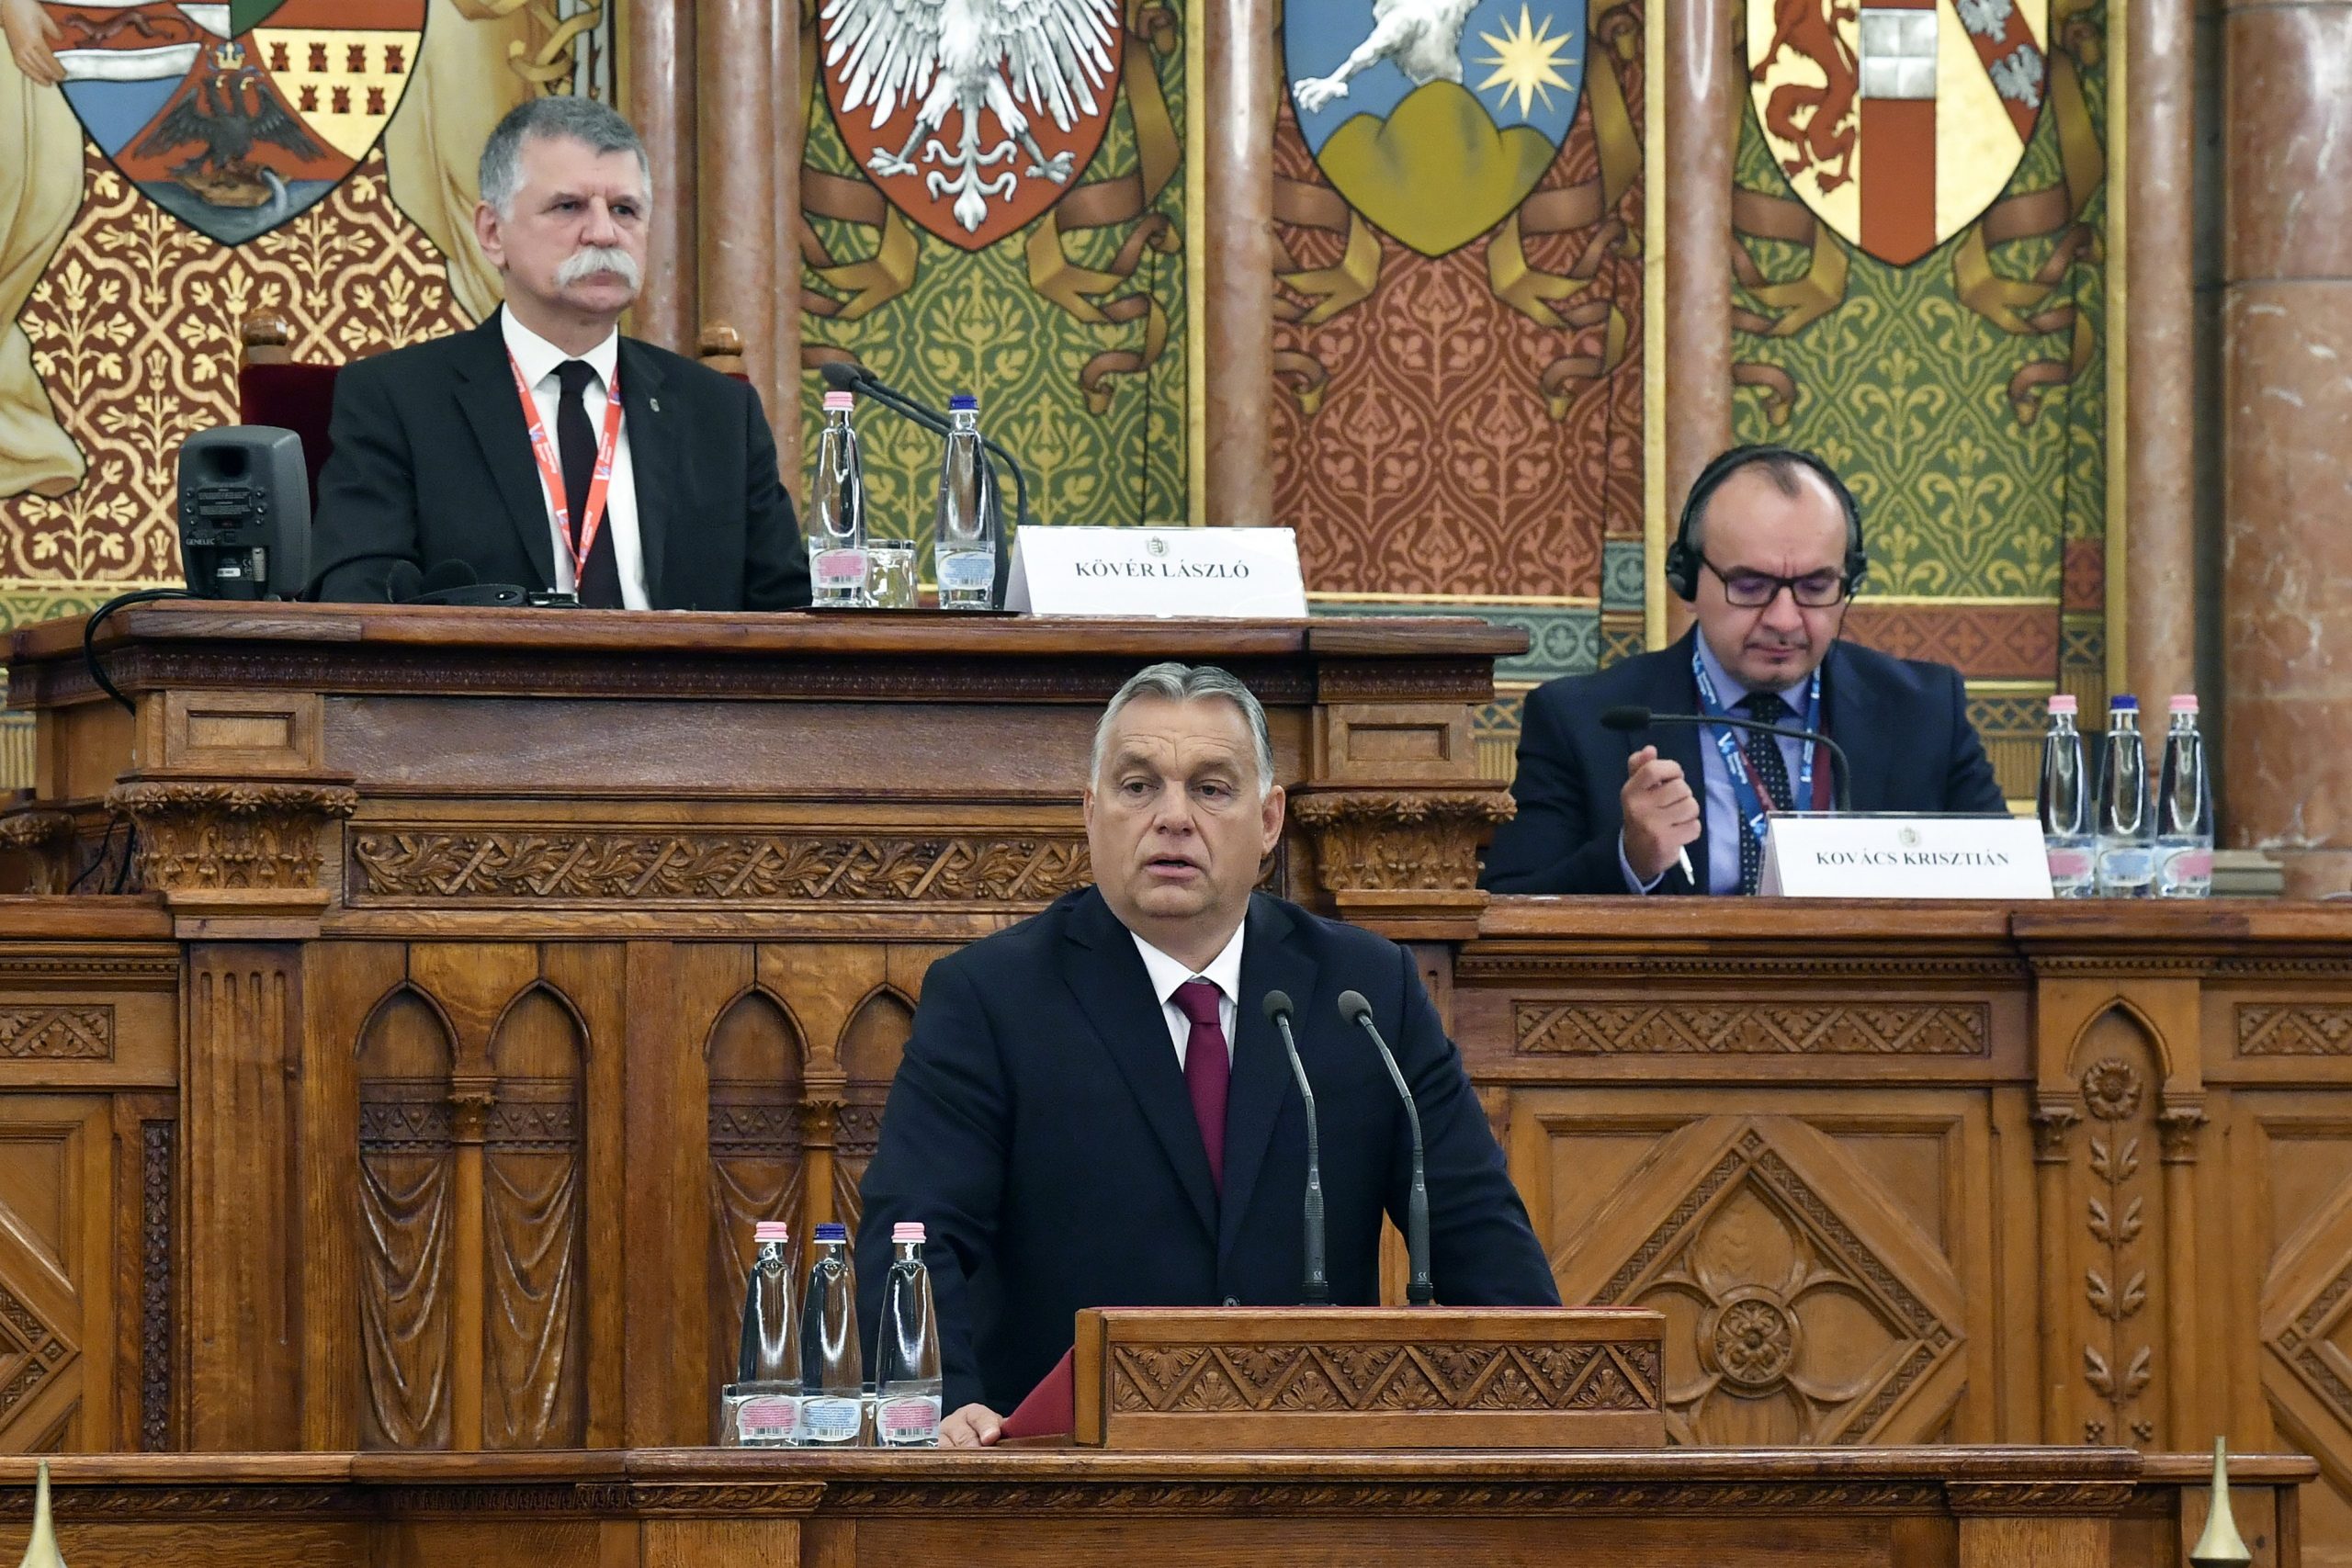 PM Orbán: Balkans 'Next Big Opportunity' for EU